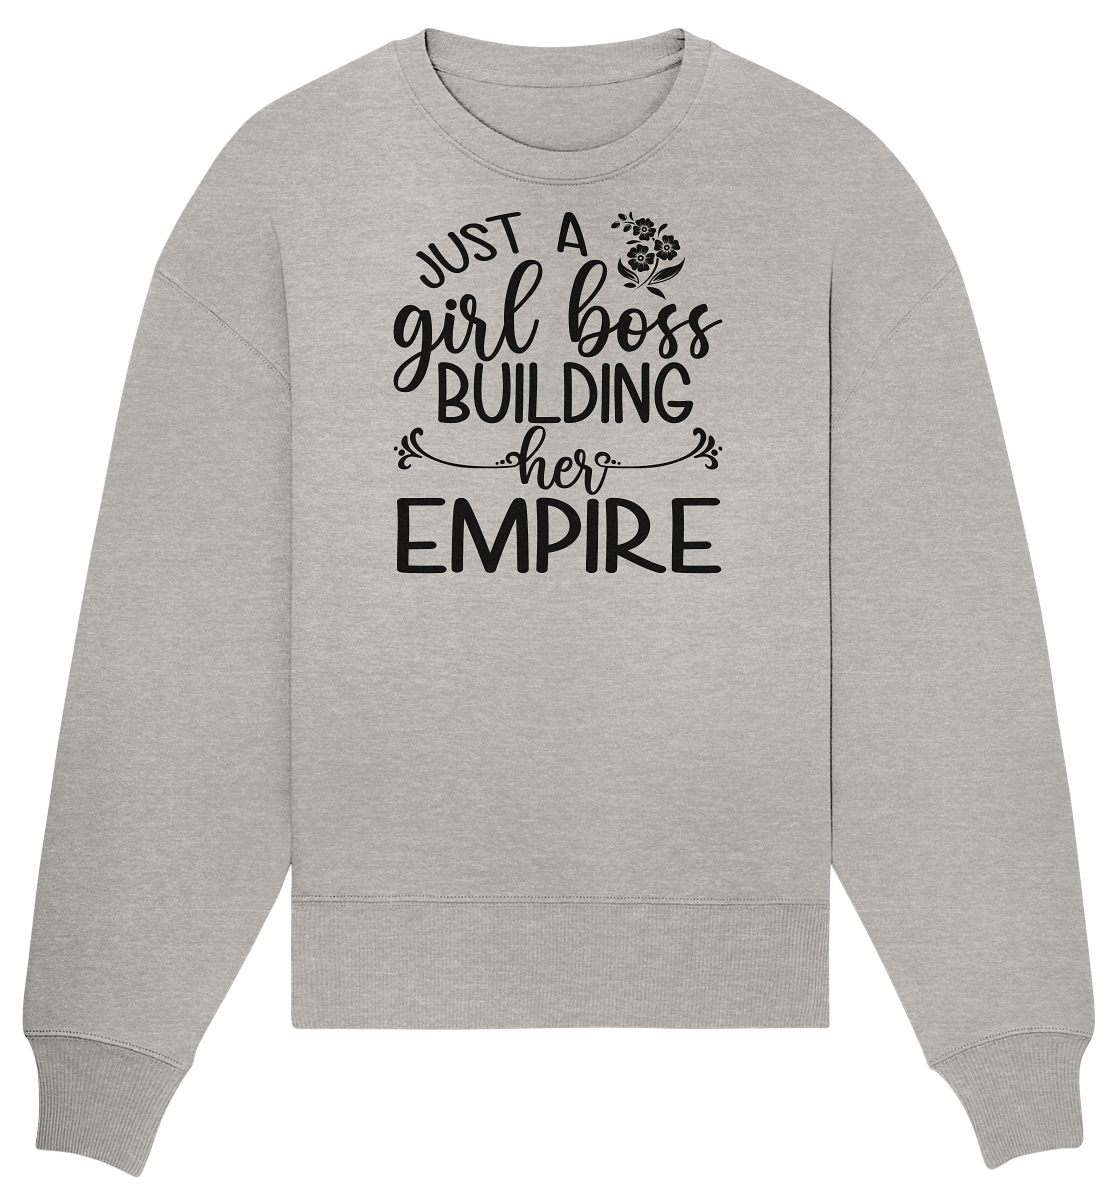 Building her Empire - Organic Oversize Sweatshirt